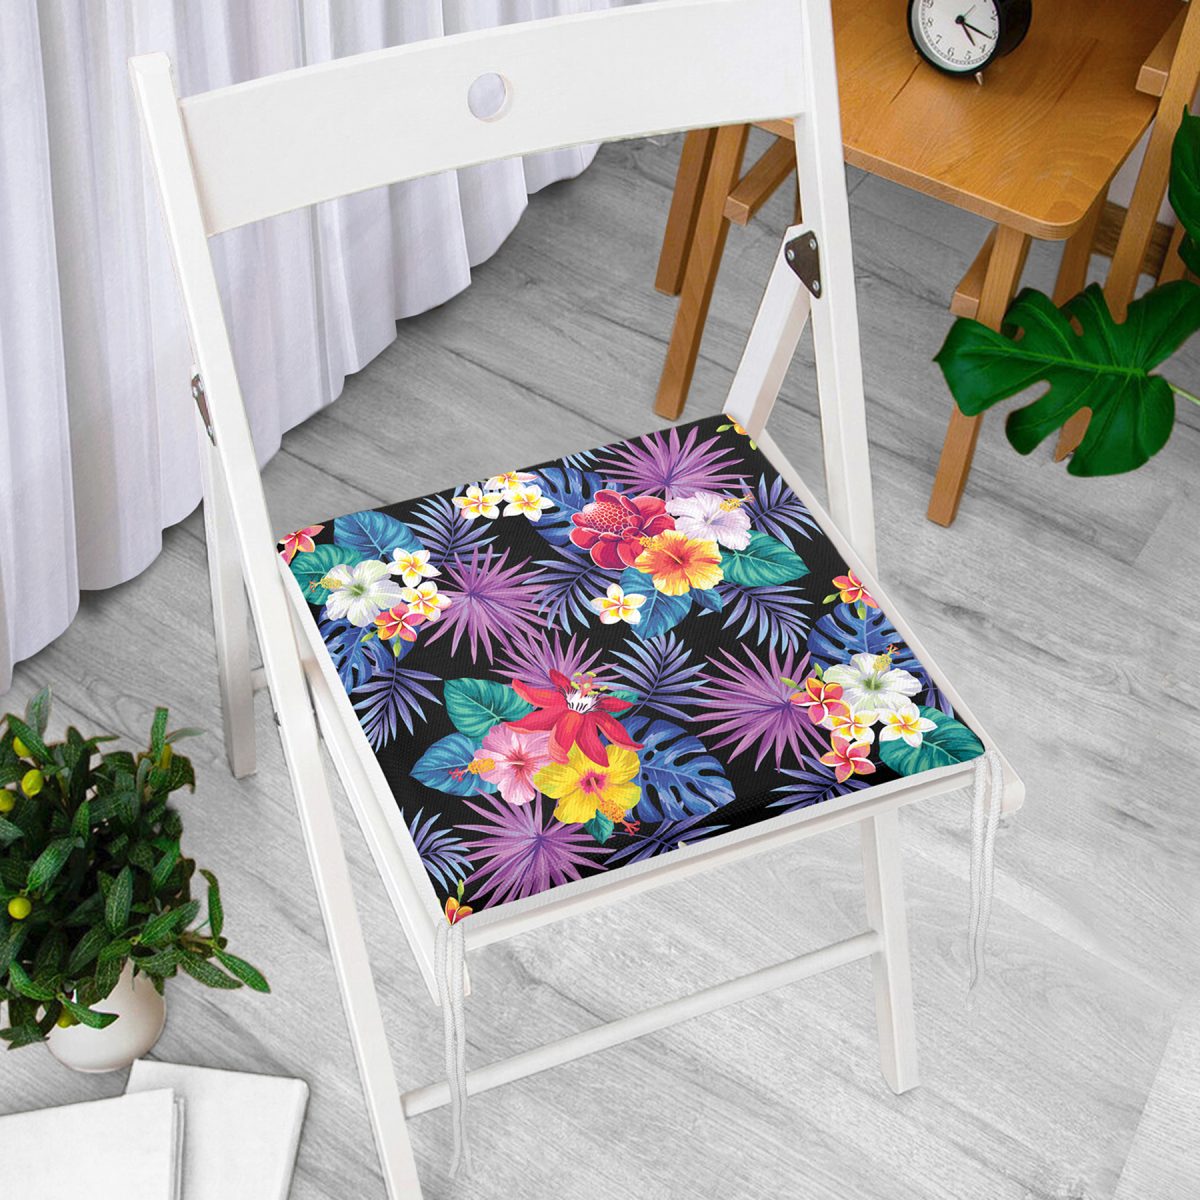 Siyah Zeminde Rengarenk Çiçekler Tasarımlı Dekoratif Fermuarlı Sandalye Minderi Realhomes